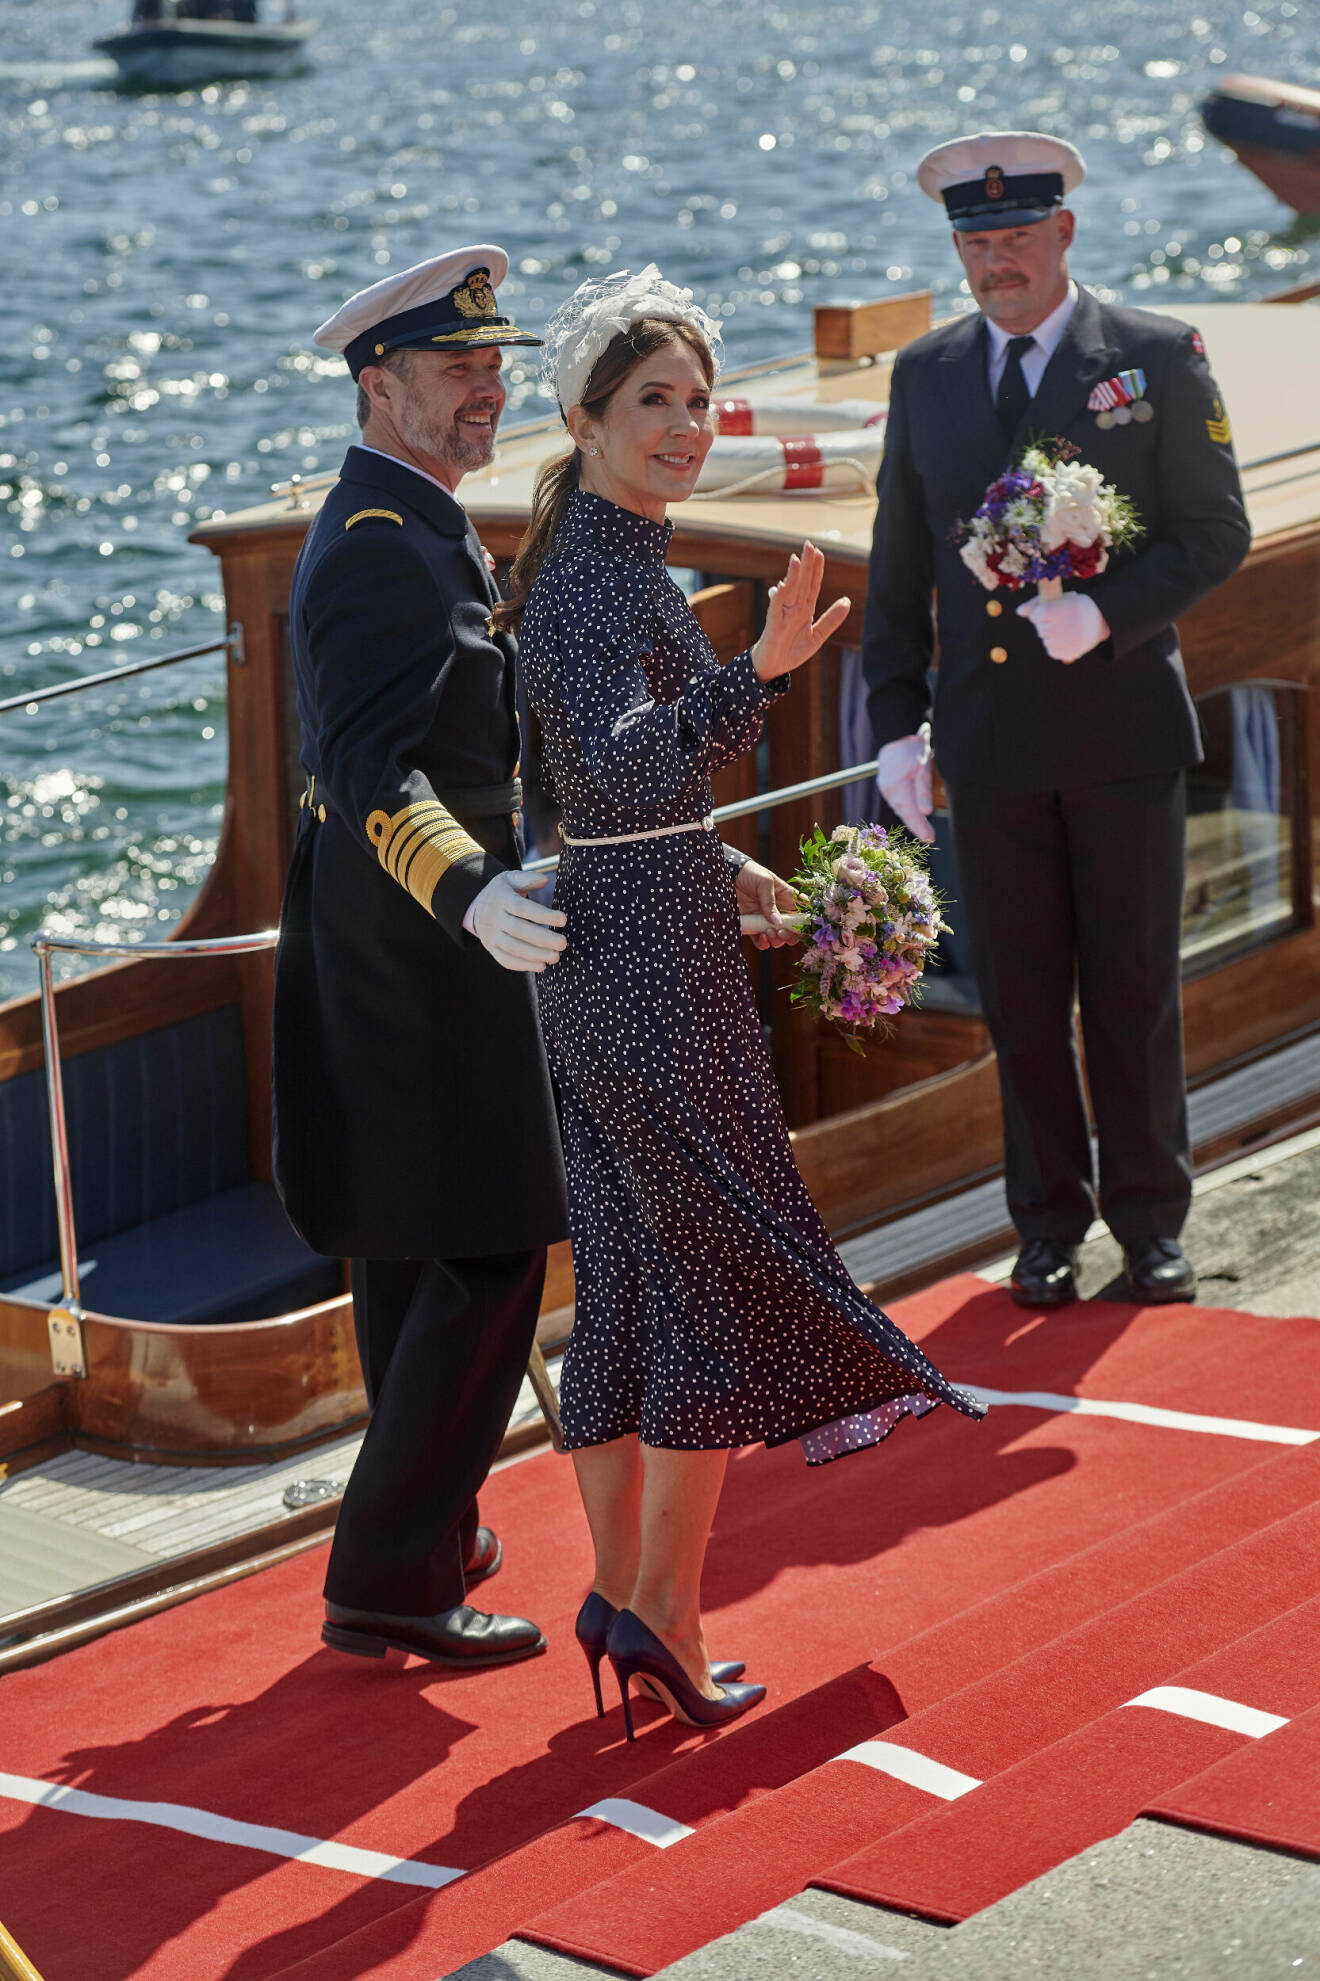 Drottning Mary och kung Frederik vid sin premiärtur med kungaskeppet Dannebrog